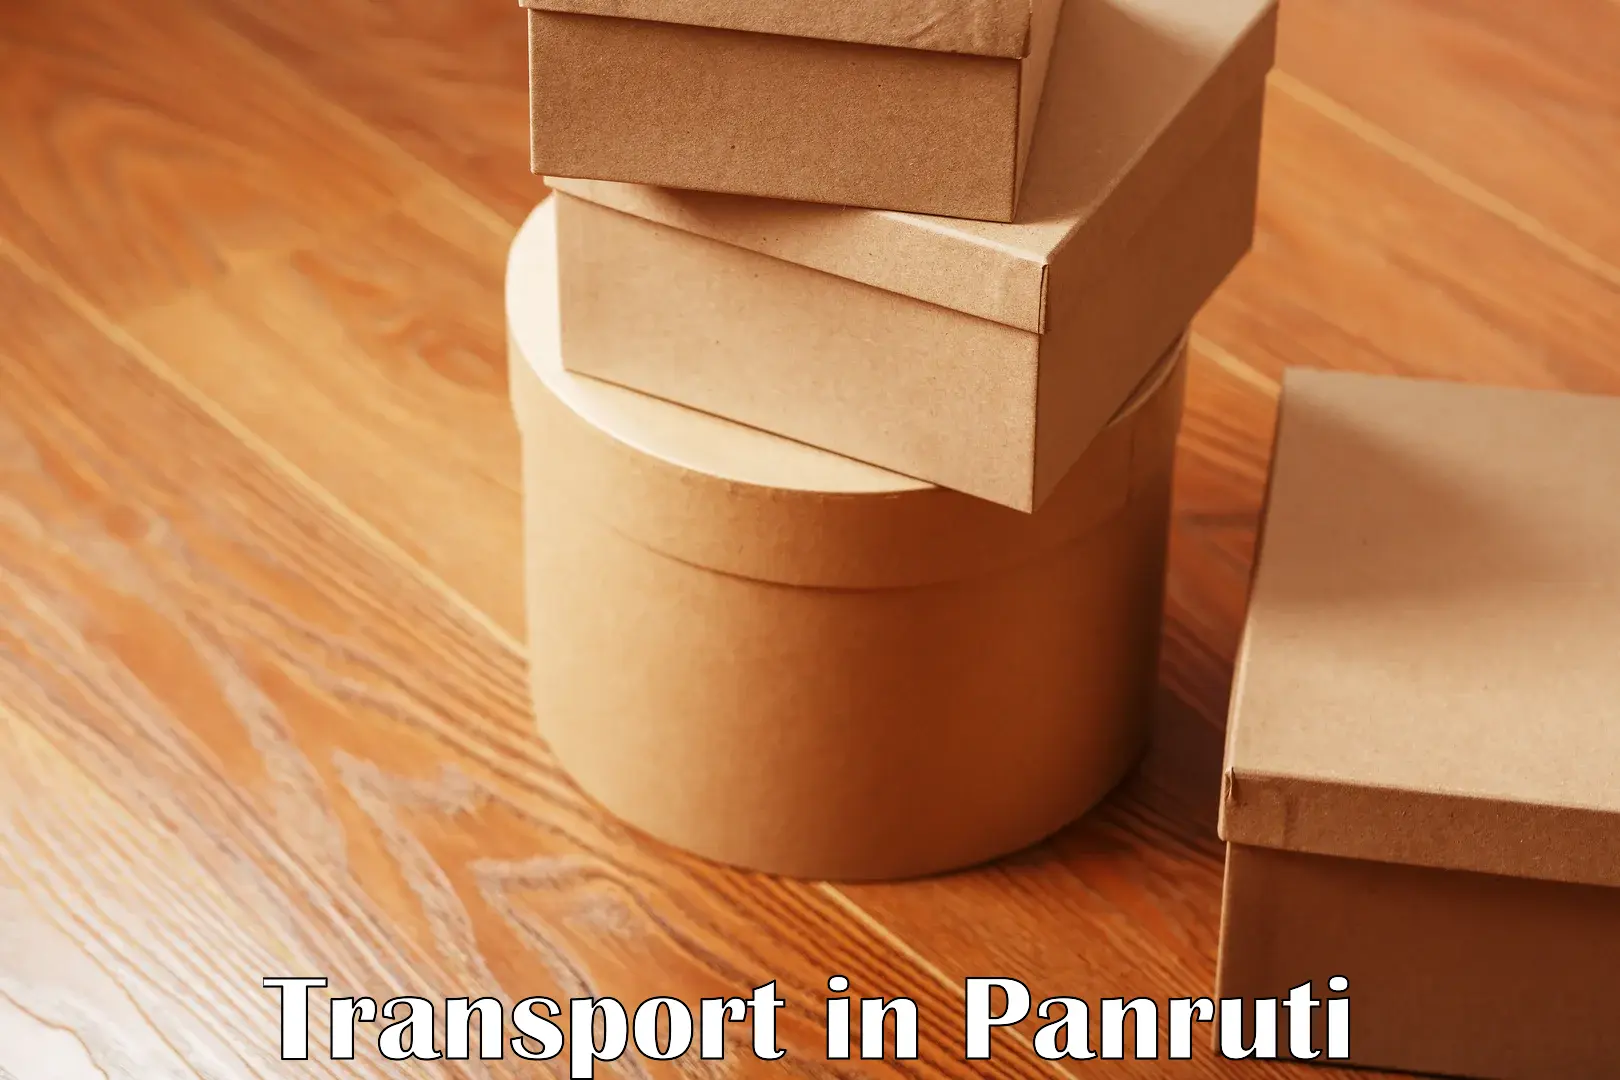 Online transport booking in Panruti